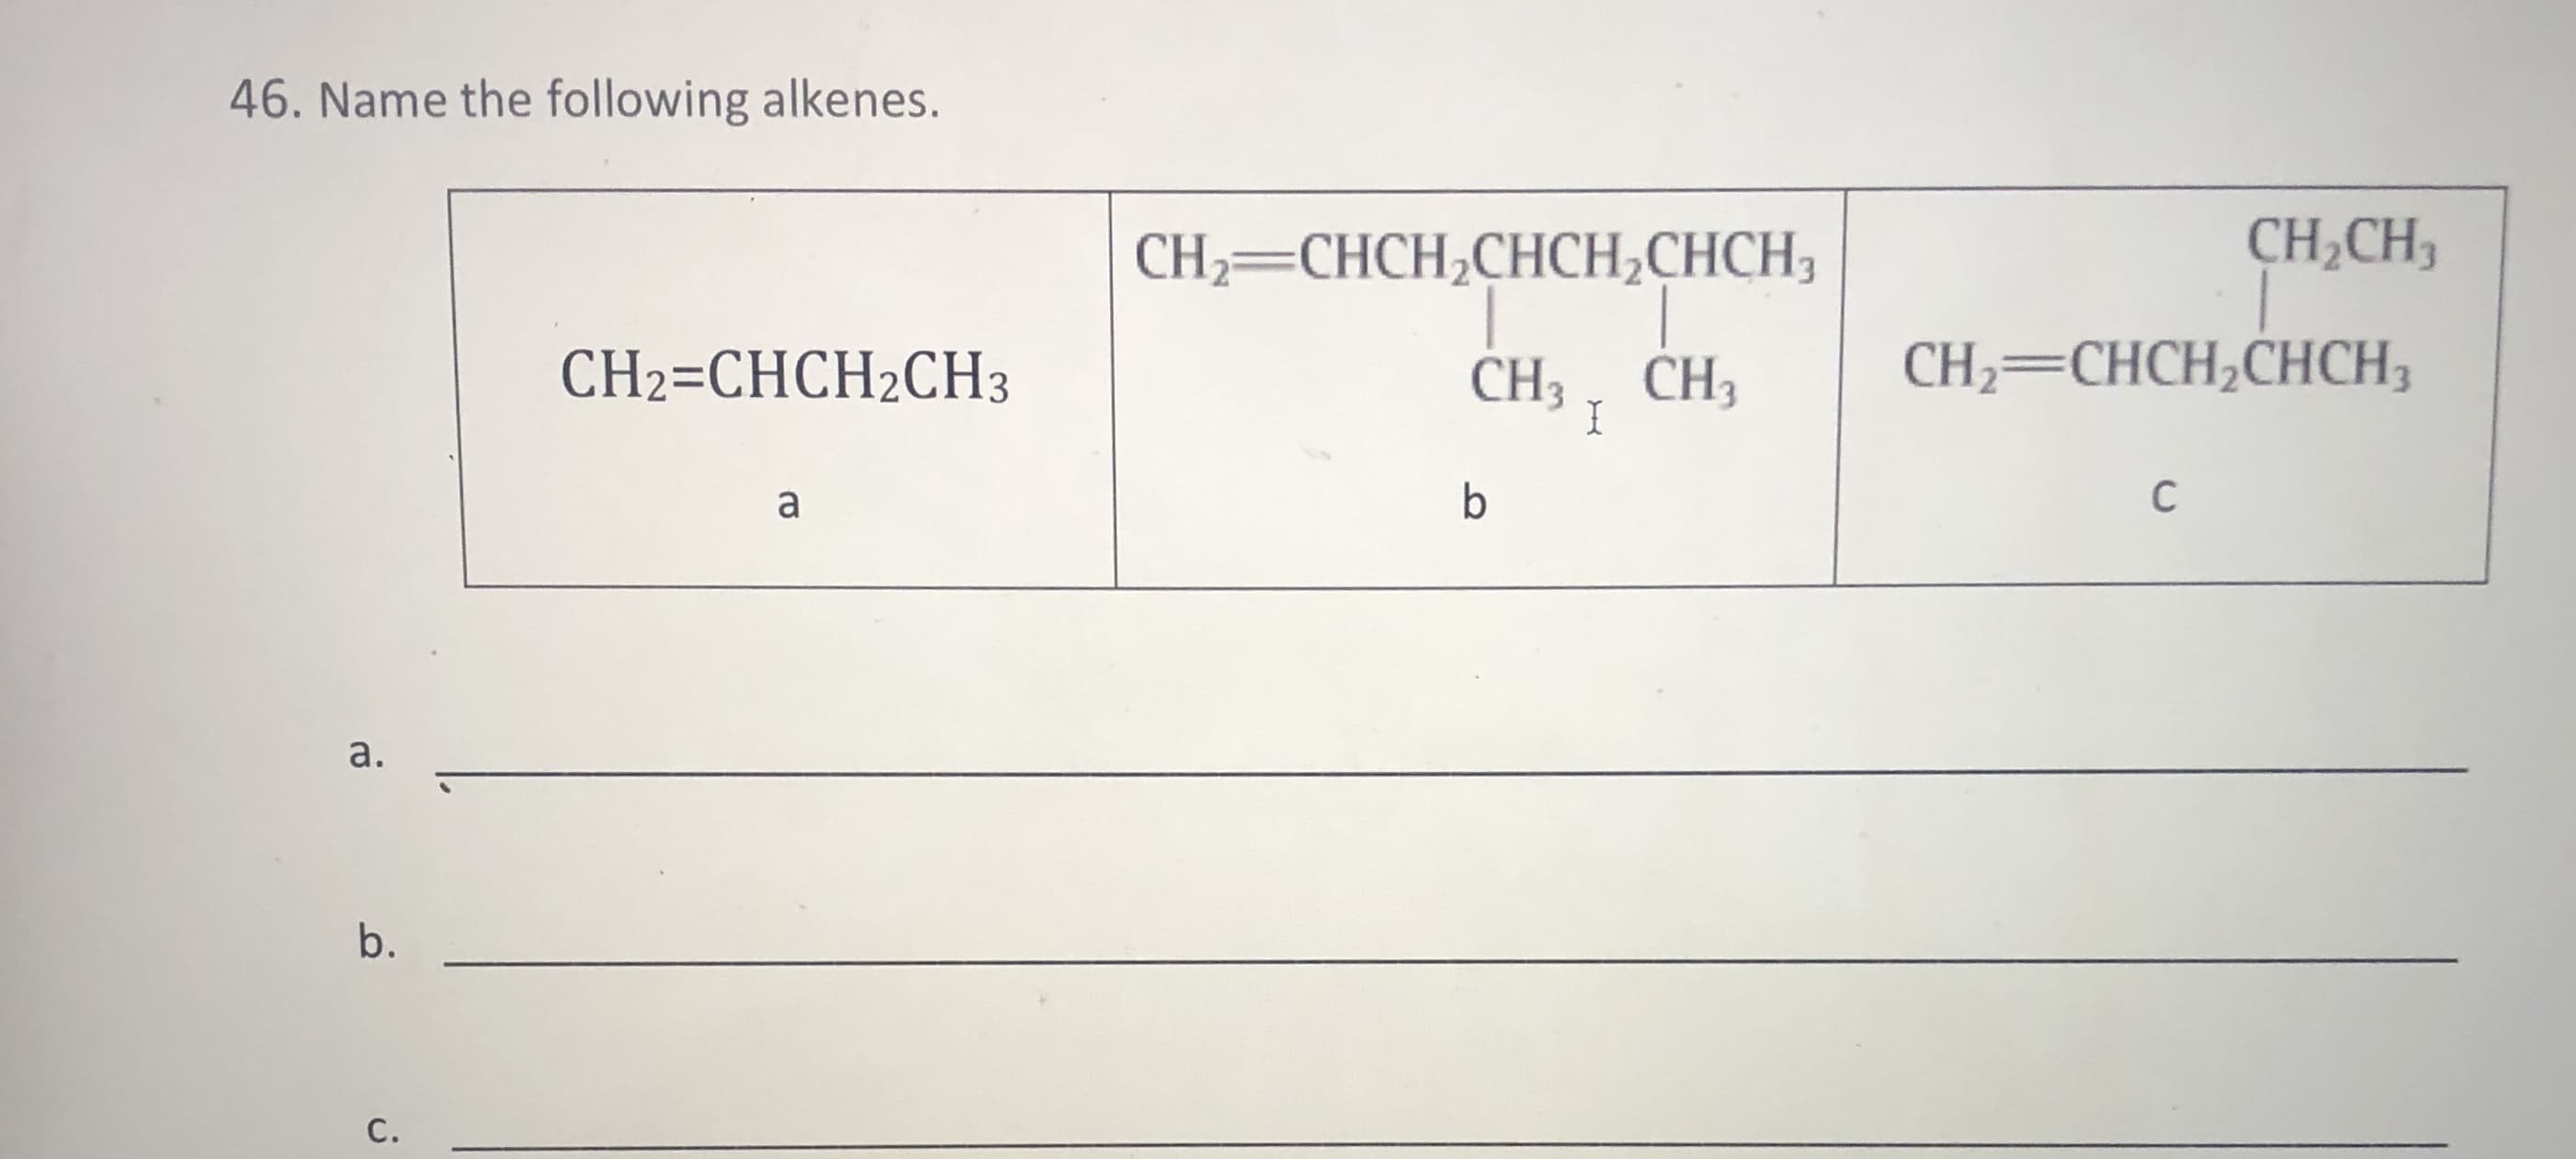 46. Name the following alkenes.
CH,CH3
CH2=CHCH,CHCH,CHCH3
1.
CH3 , CH3
CH2=CHCH2CH3
CH2=CHCH,CHCH3
a
C
